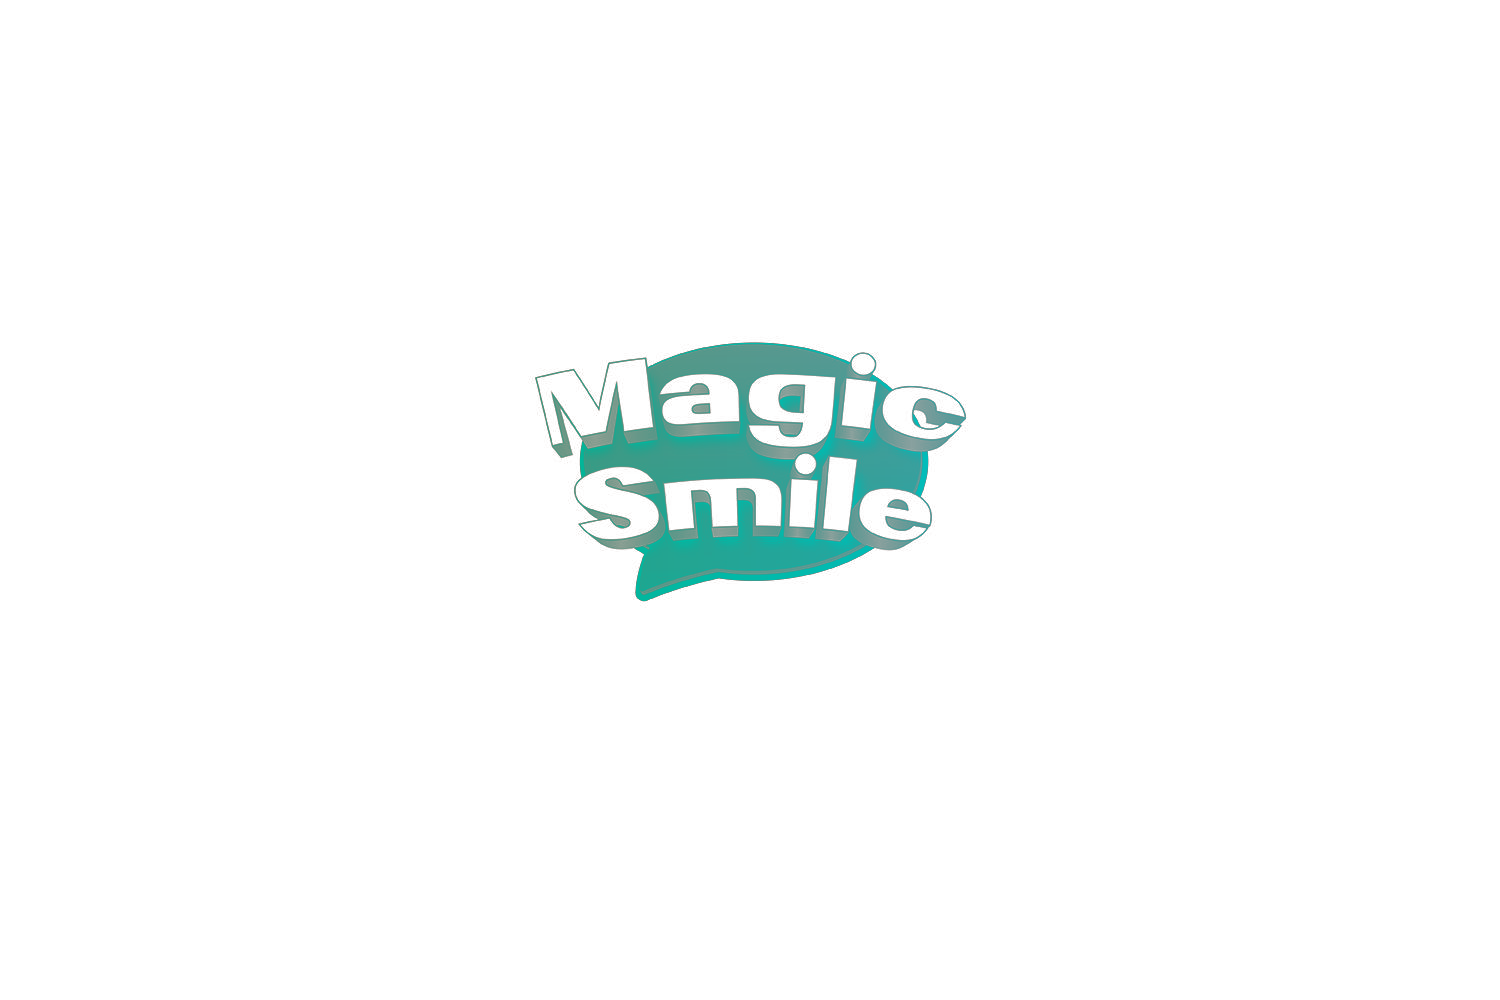 MAGIC SMILE